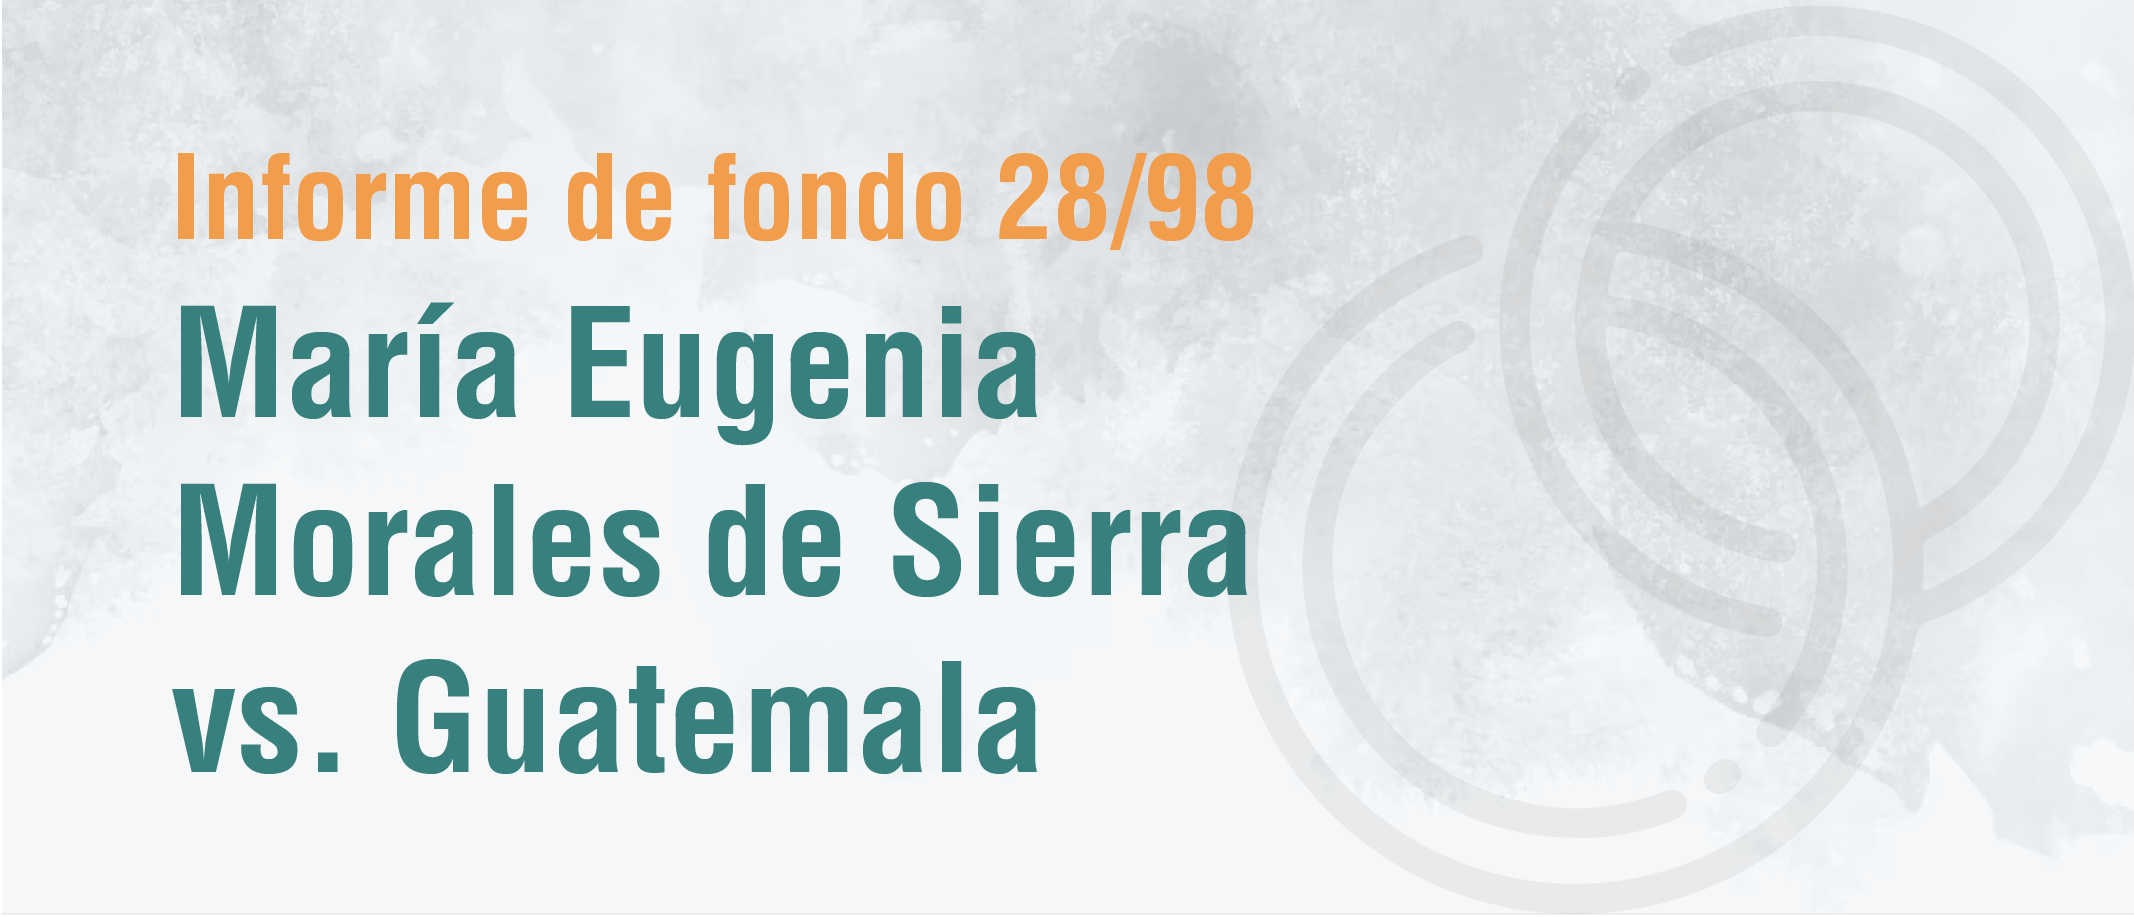 Informe de fondo 28/98 de María Eugenia Morales de Sierra vs. Guatemala sobre igualdad de derechos en el matrimonio